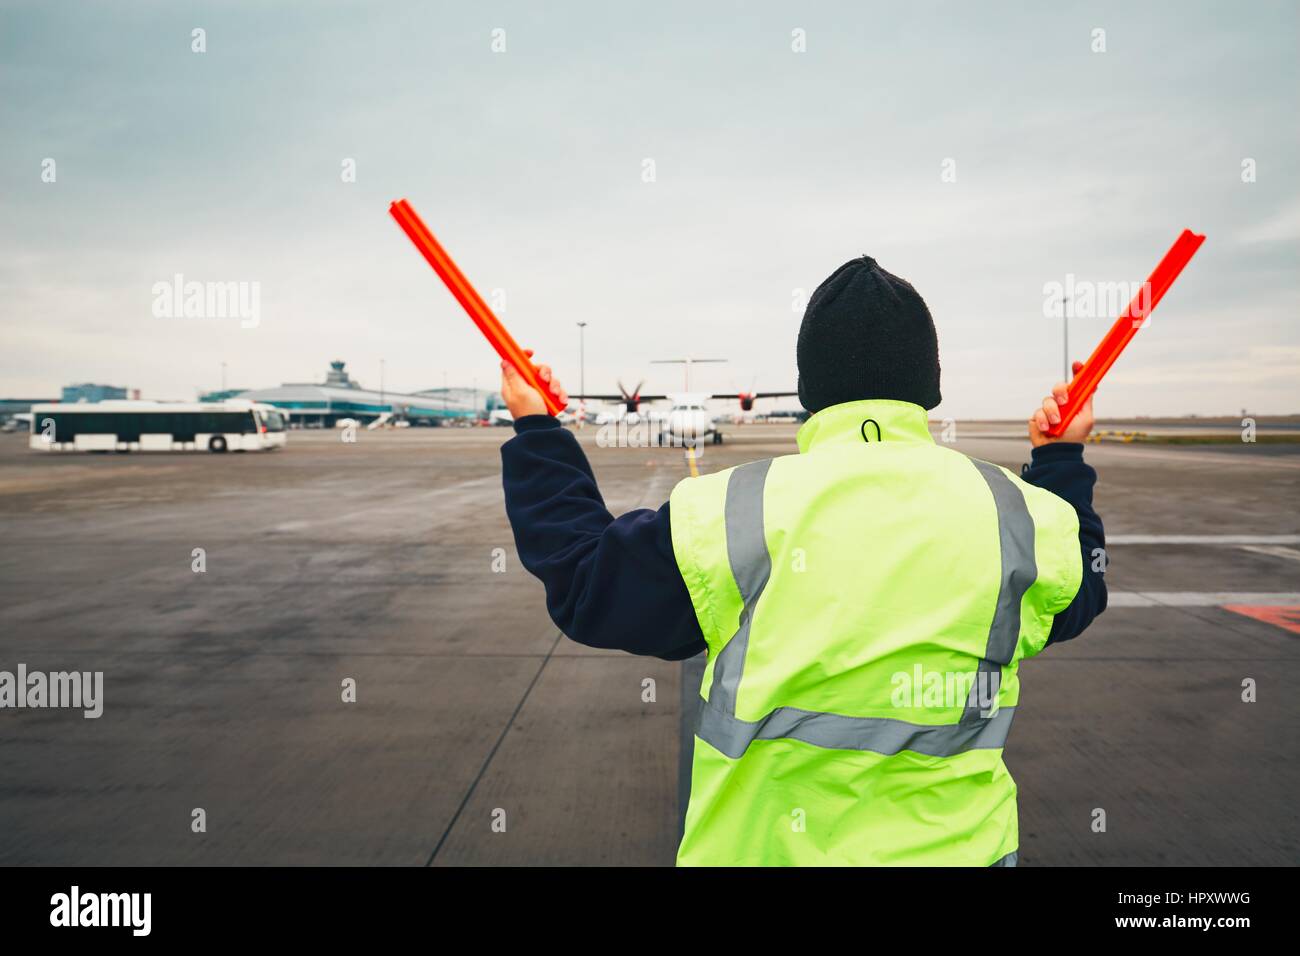 PRAGUE, RÉPUBLIQUE TCHÈQUE - 1 décembre 2016 : Avions placier au cours de la signalisation visuelle pour les pilotes après l'atterrissage. L'aéroport de Prague Vaclav Havel sur Décembre Banque D'Images